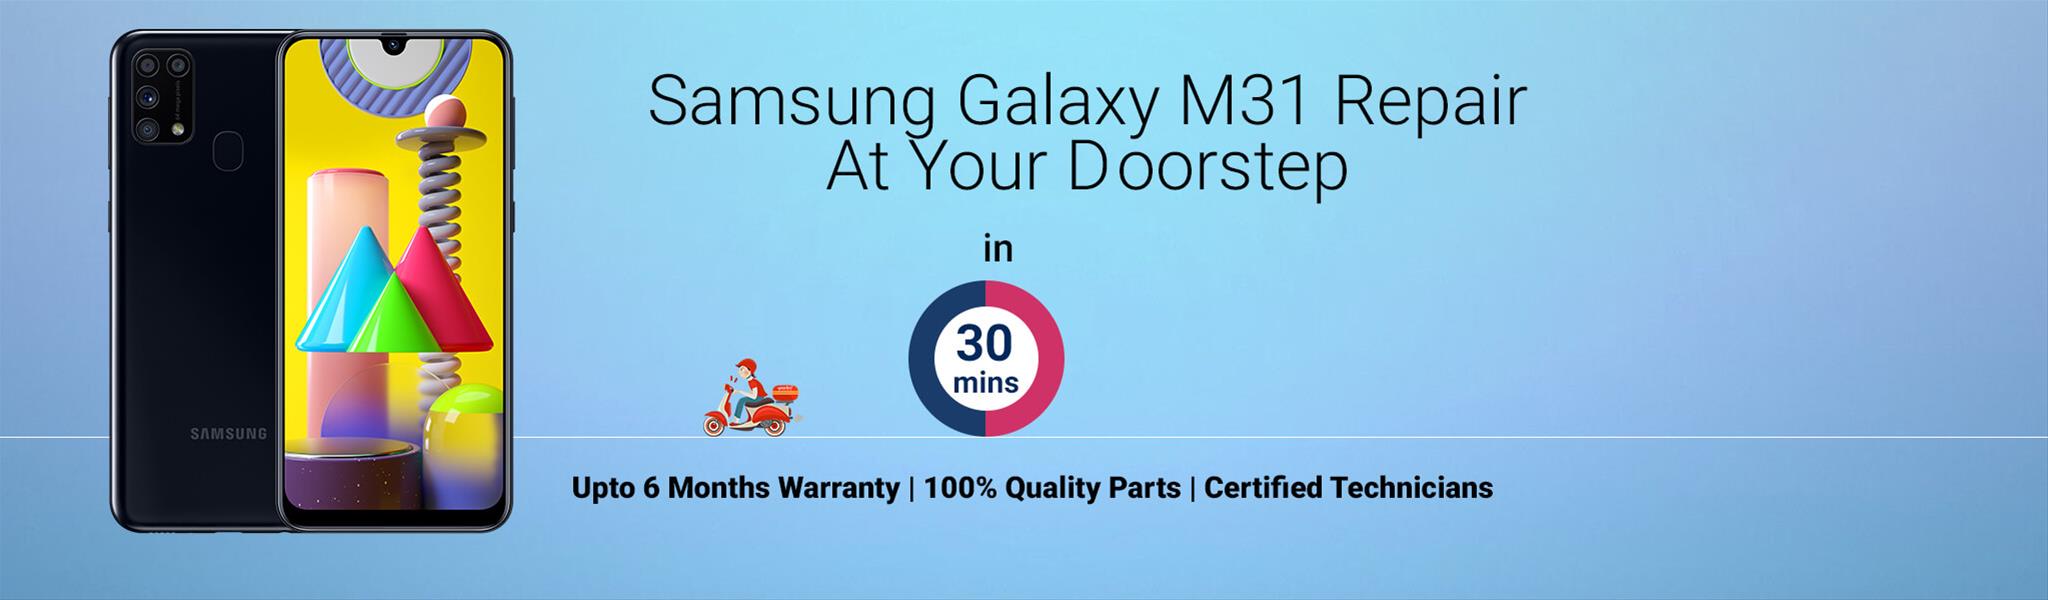 Samsung-M31-repair.jpg